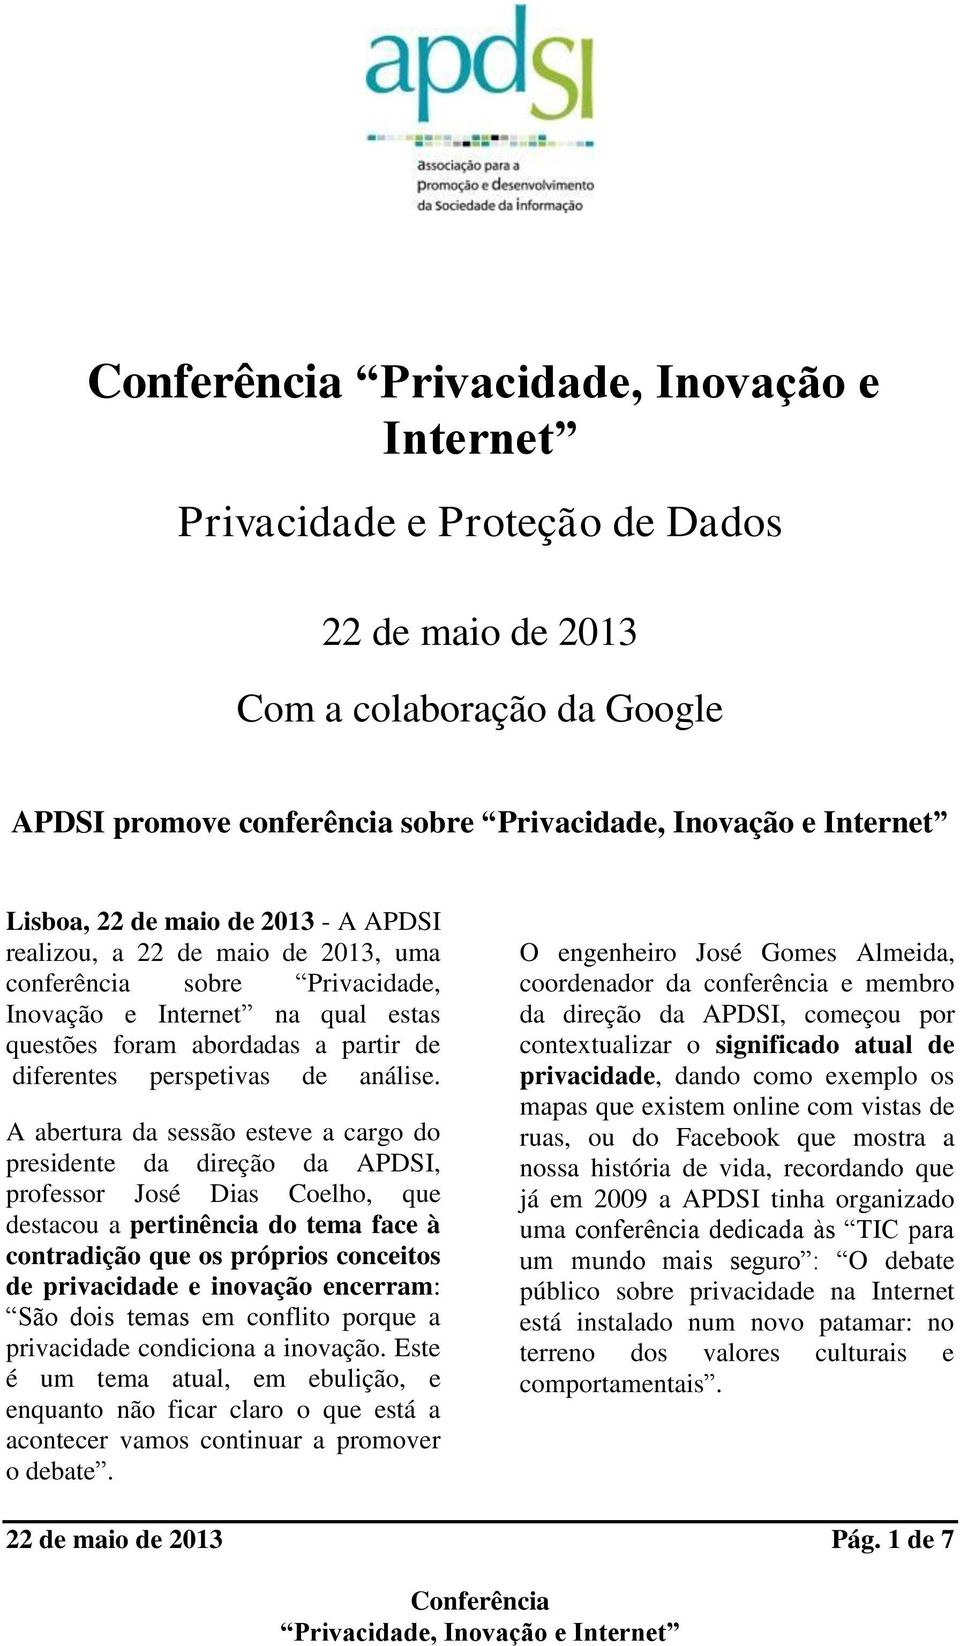 A abertura da sessão esteve a cargo do presidente da direção da APDSI, professor José Dias Coelho, que destacou a pertinência do tema face à contradição que os próprios conceitos de privacidade e